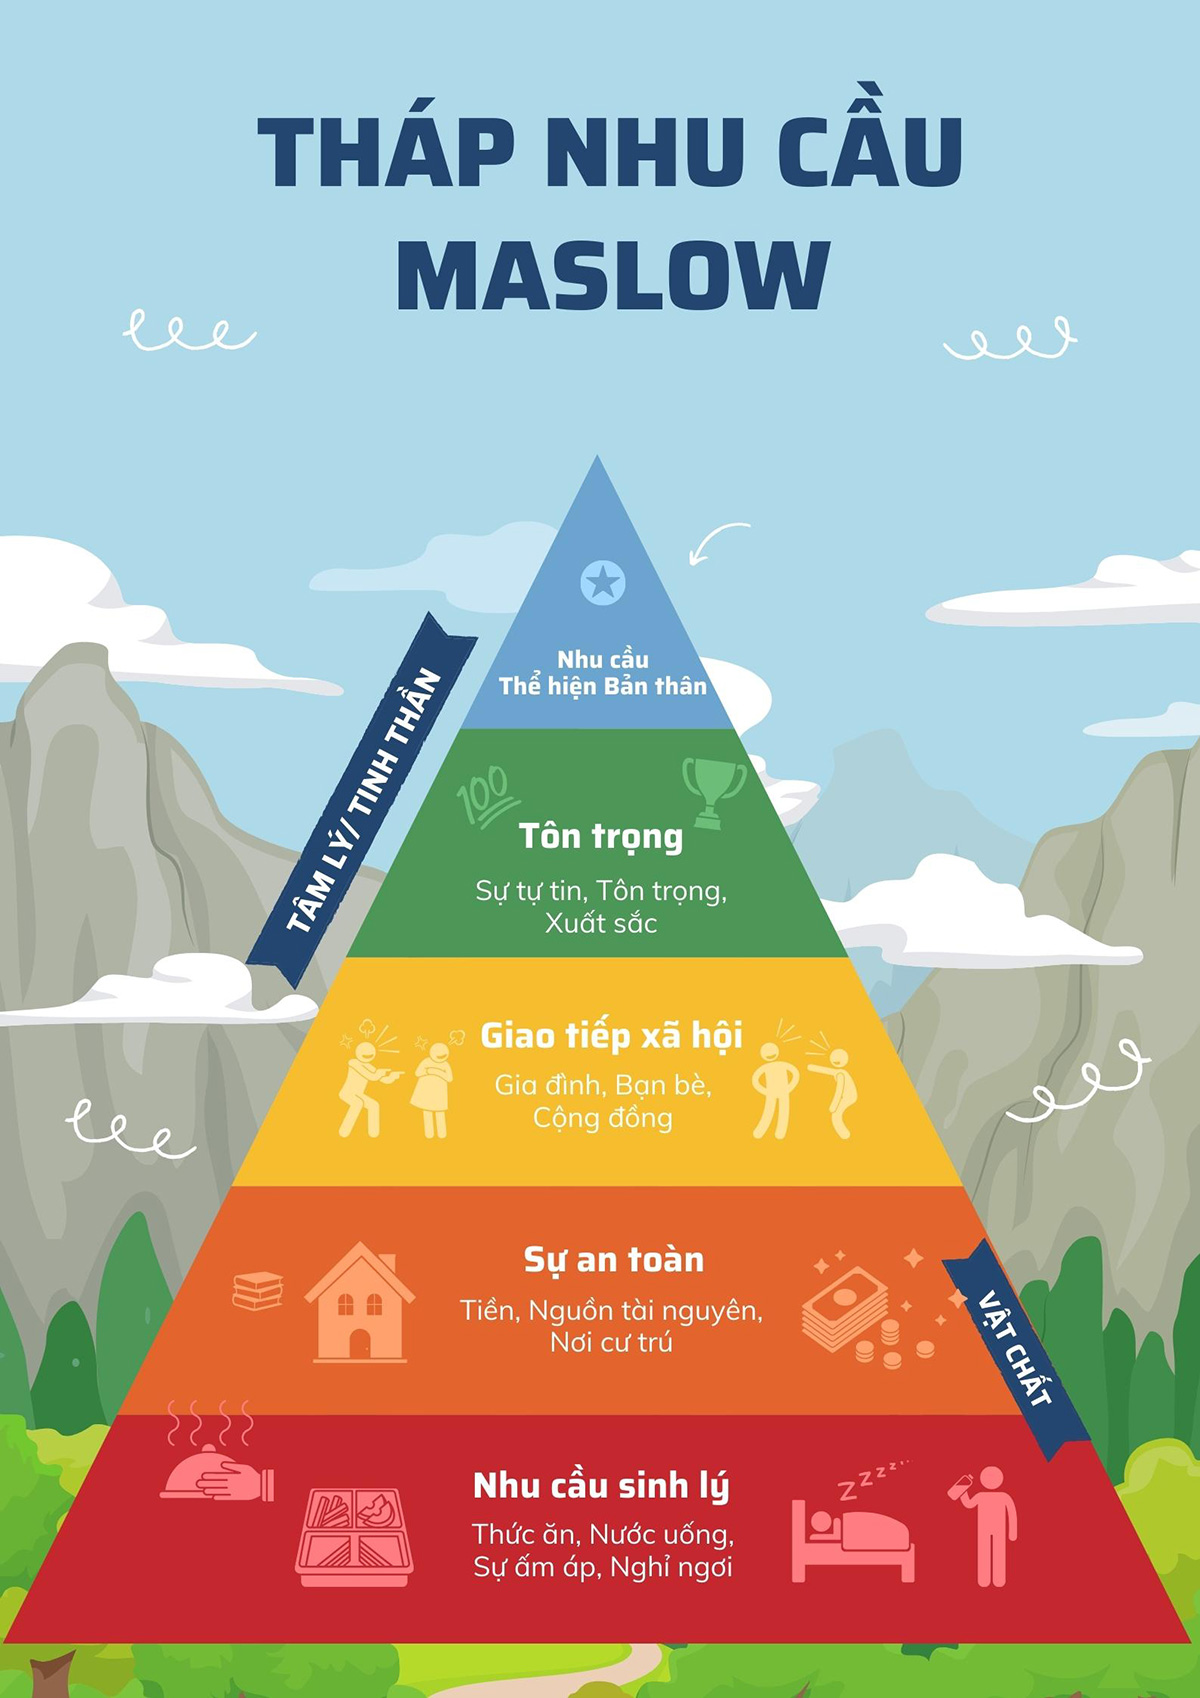 Tháp nhu cầu Maslow là một mô hình tâm lý đại diện cho những hành vi, tâm lý phổ biến của con người theo mô hình 5 tầng của kim tự tháp